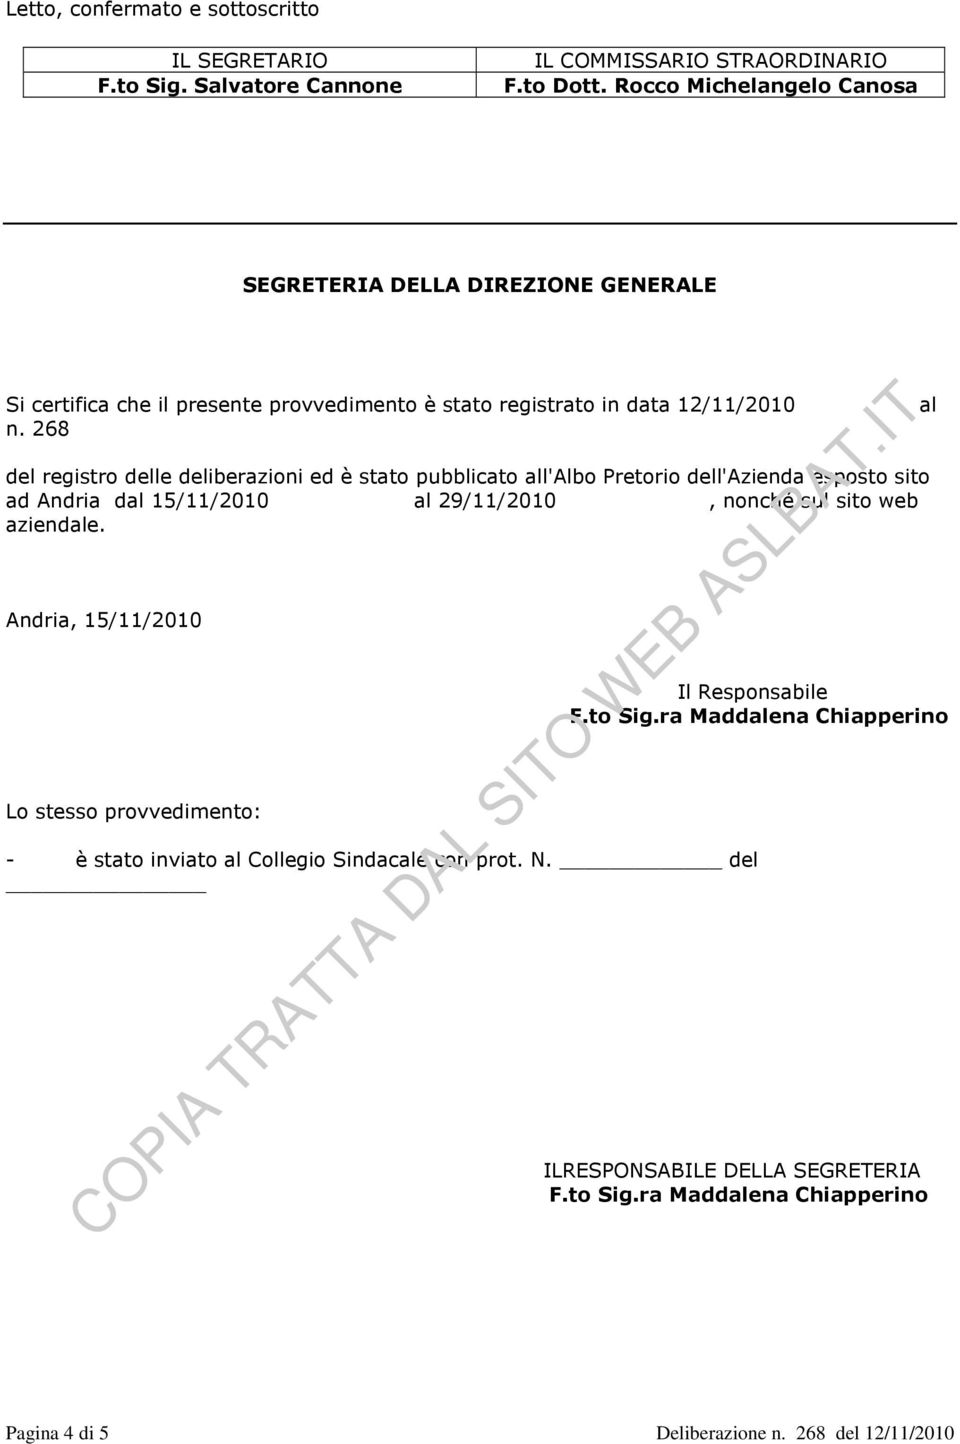 268 del registro delle deliberazioni ed è stato pubblicato all'albo Pretorio dell'azienda esposto sito ad Andria dal 15/11/2010 al 29/11/2010, nonché sul sito web aziendale.